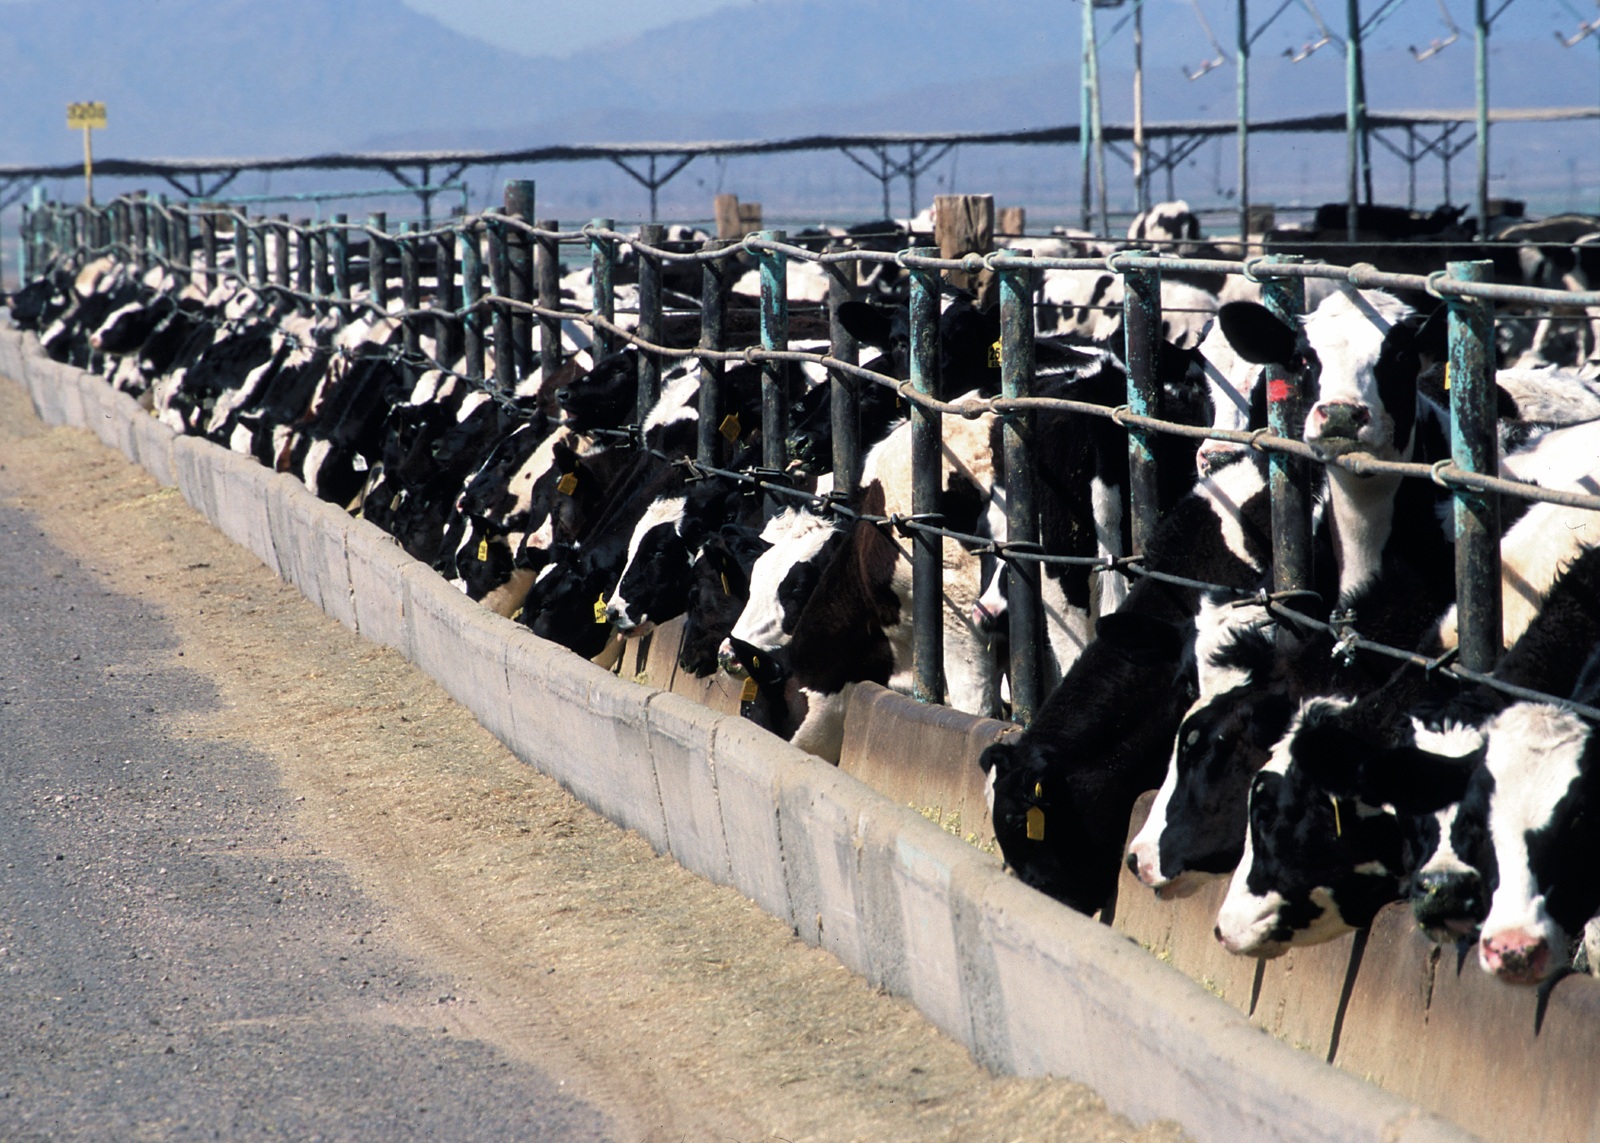 Les bovins, parfois par milliers, étaient en permanence confinés ©USDA - Jeff Vanuga